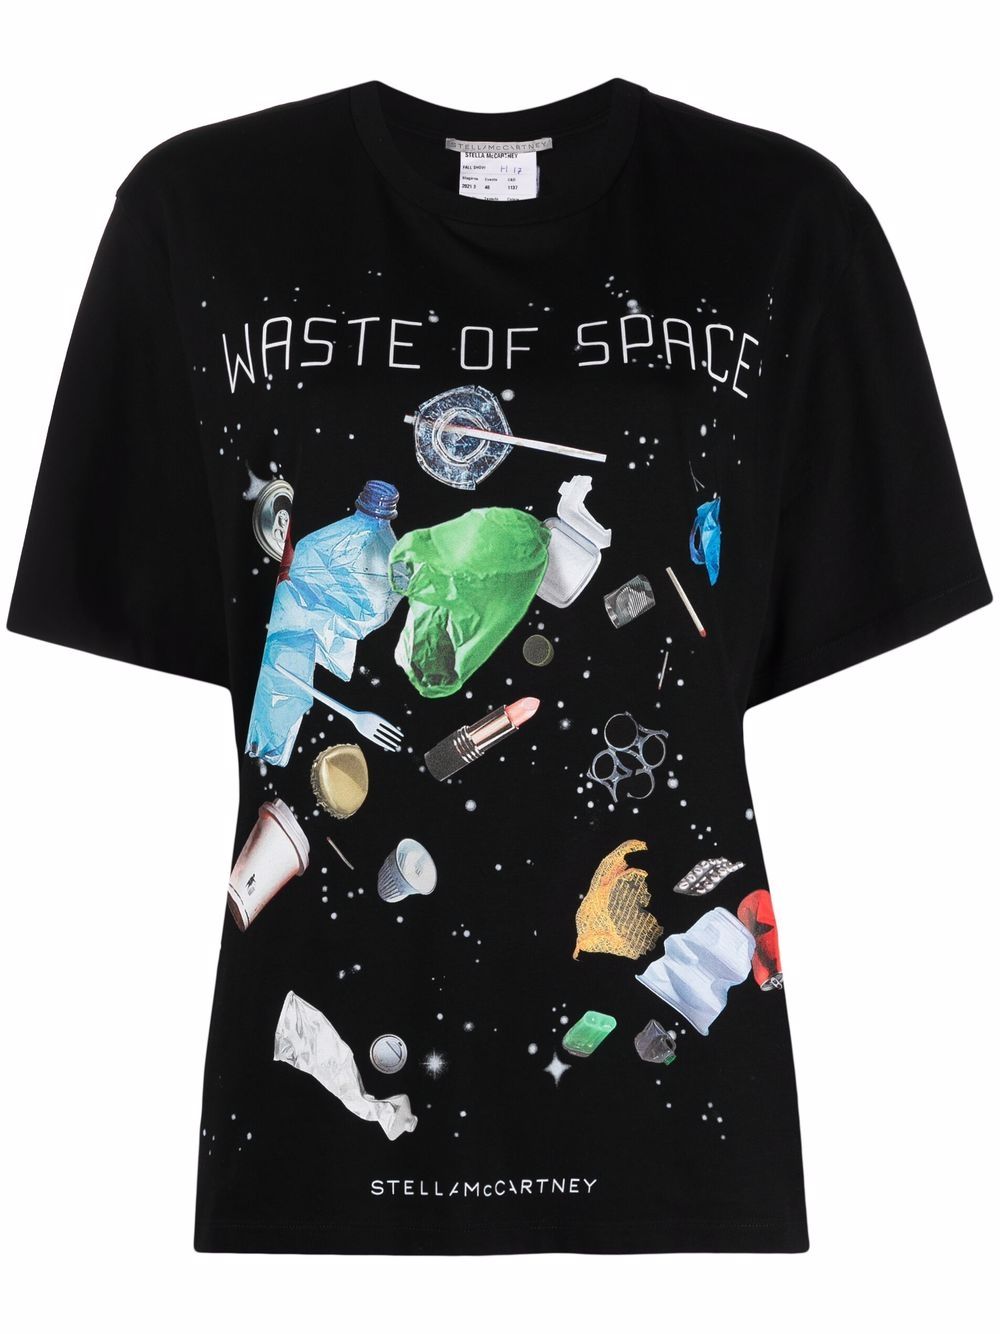 Stella McCartney ステラ・マッカートニー Waste of Space Tシャツ 